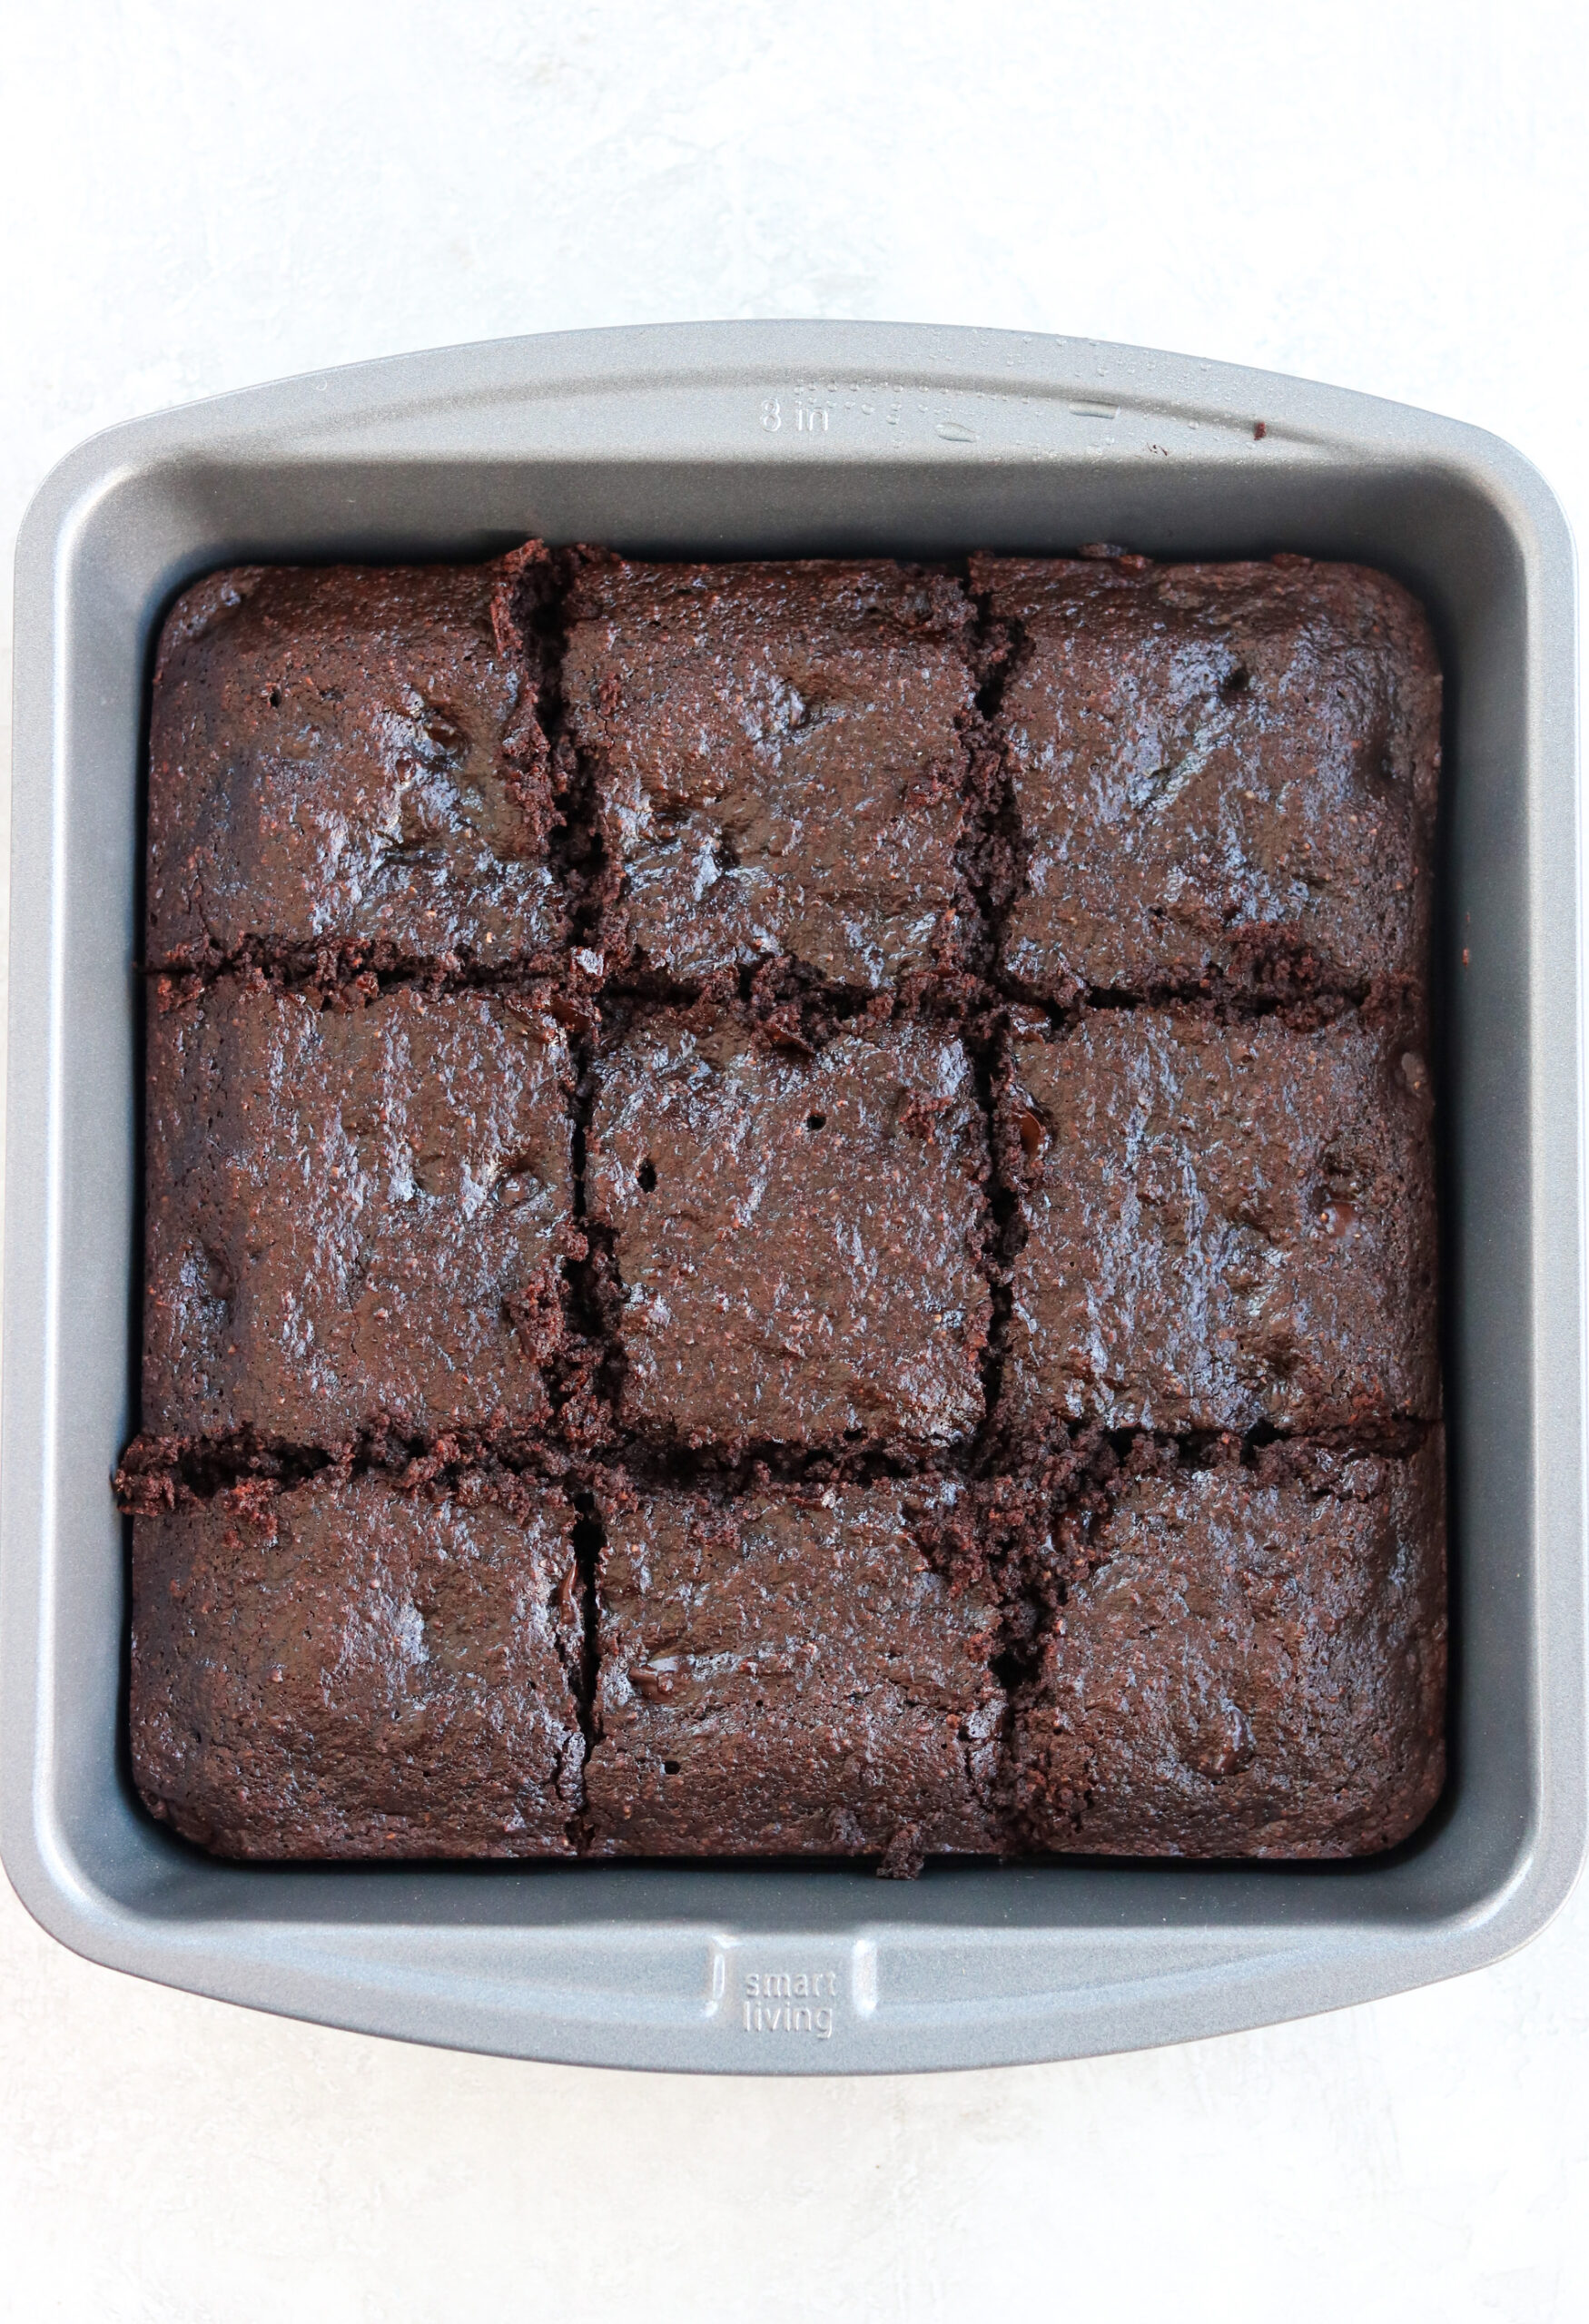 brownies in a baking pan